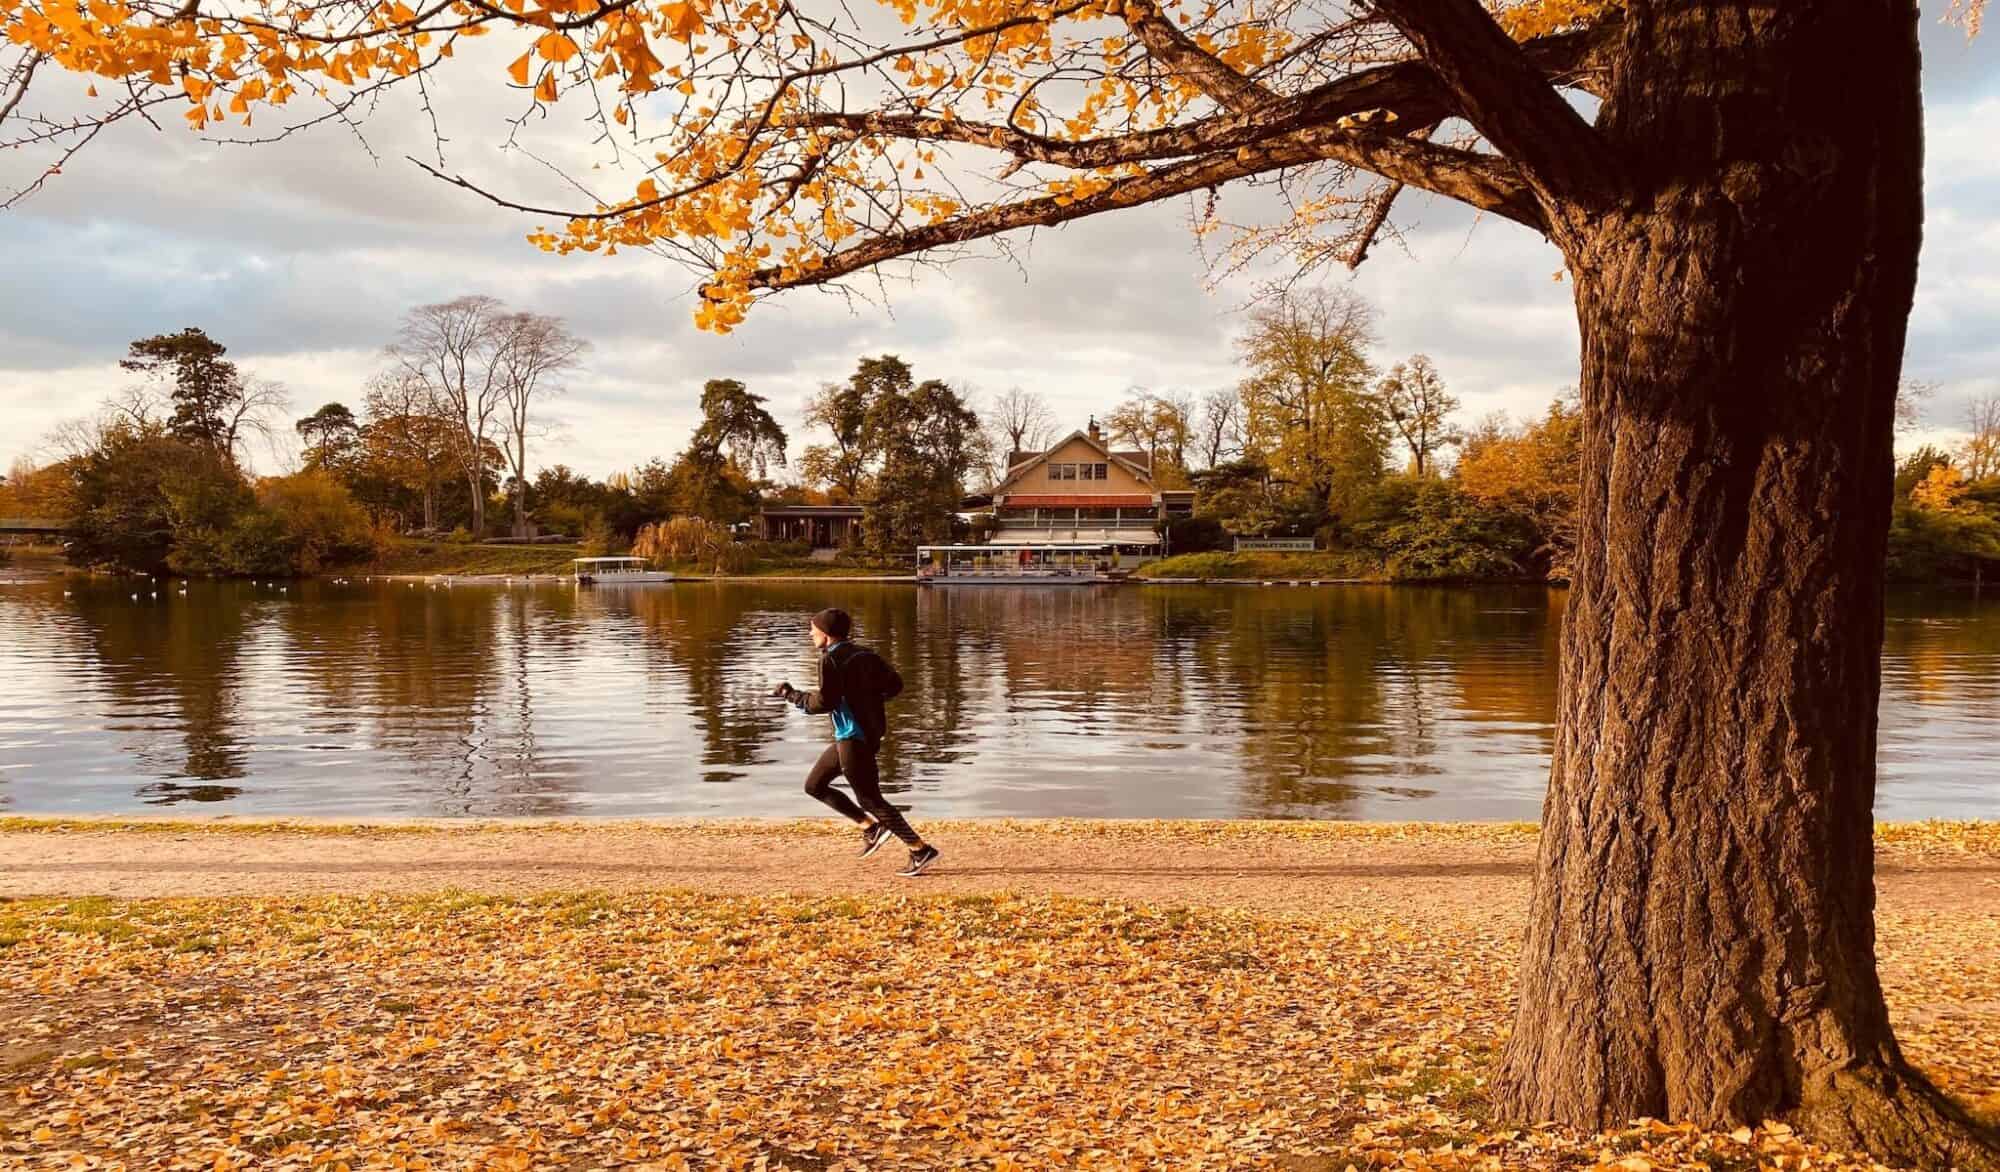 A man runs by a lake during autumn.